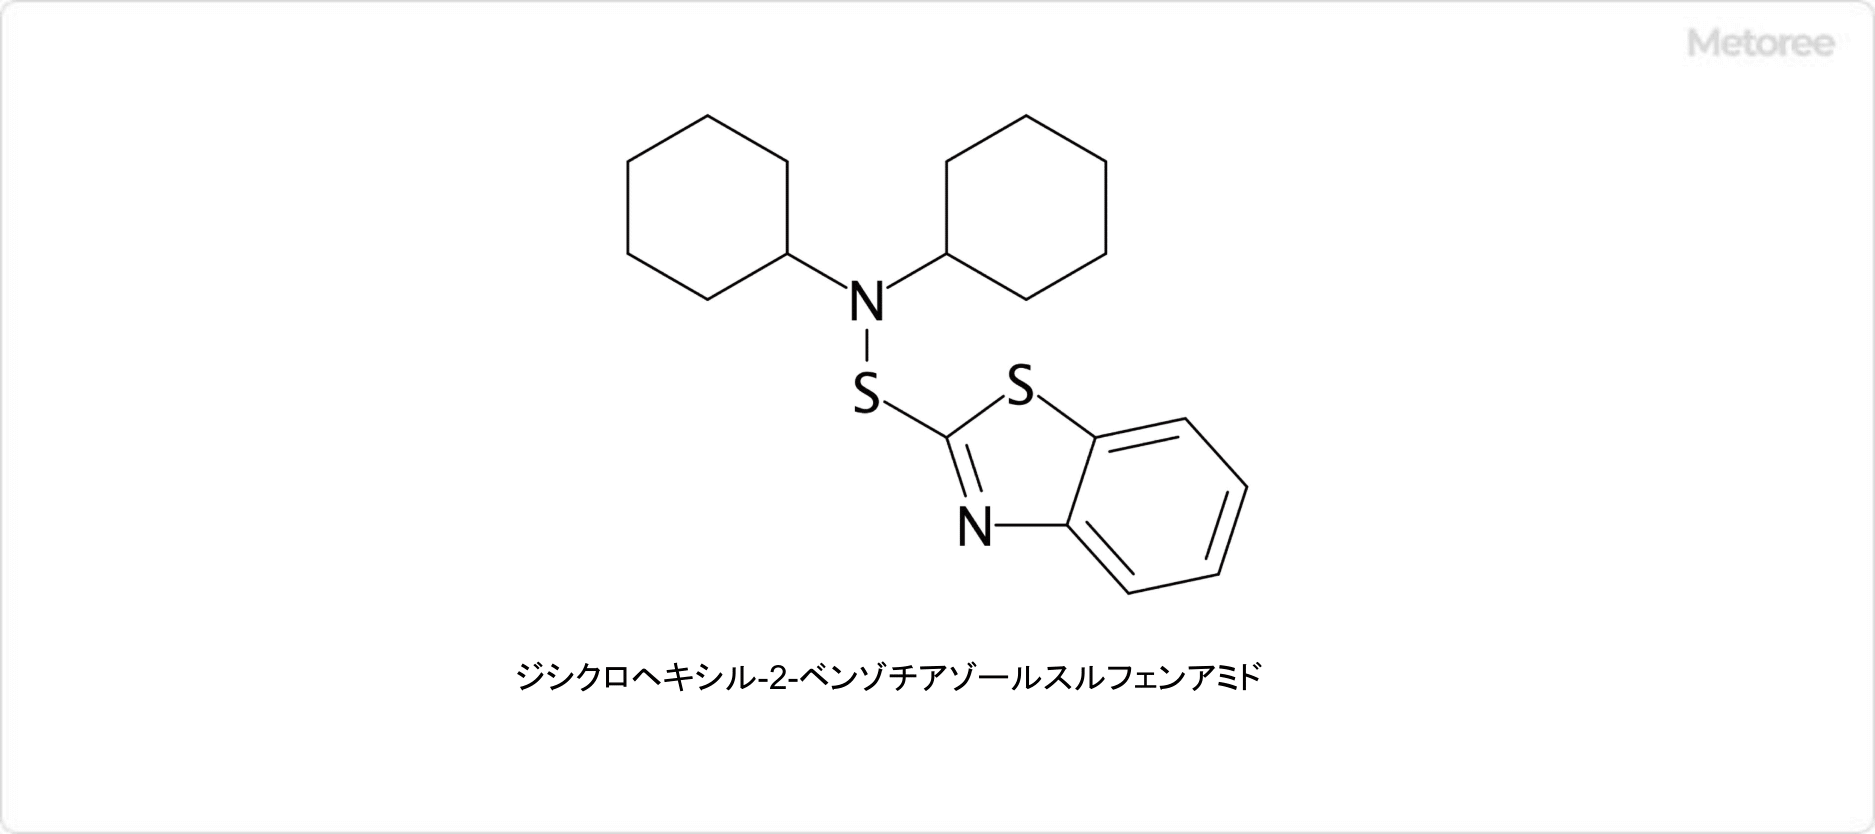 スルフェンアミド系加硫促進剤の例